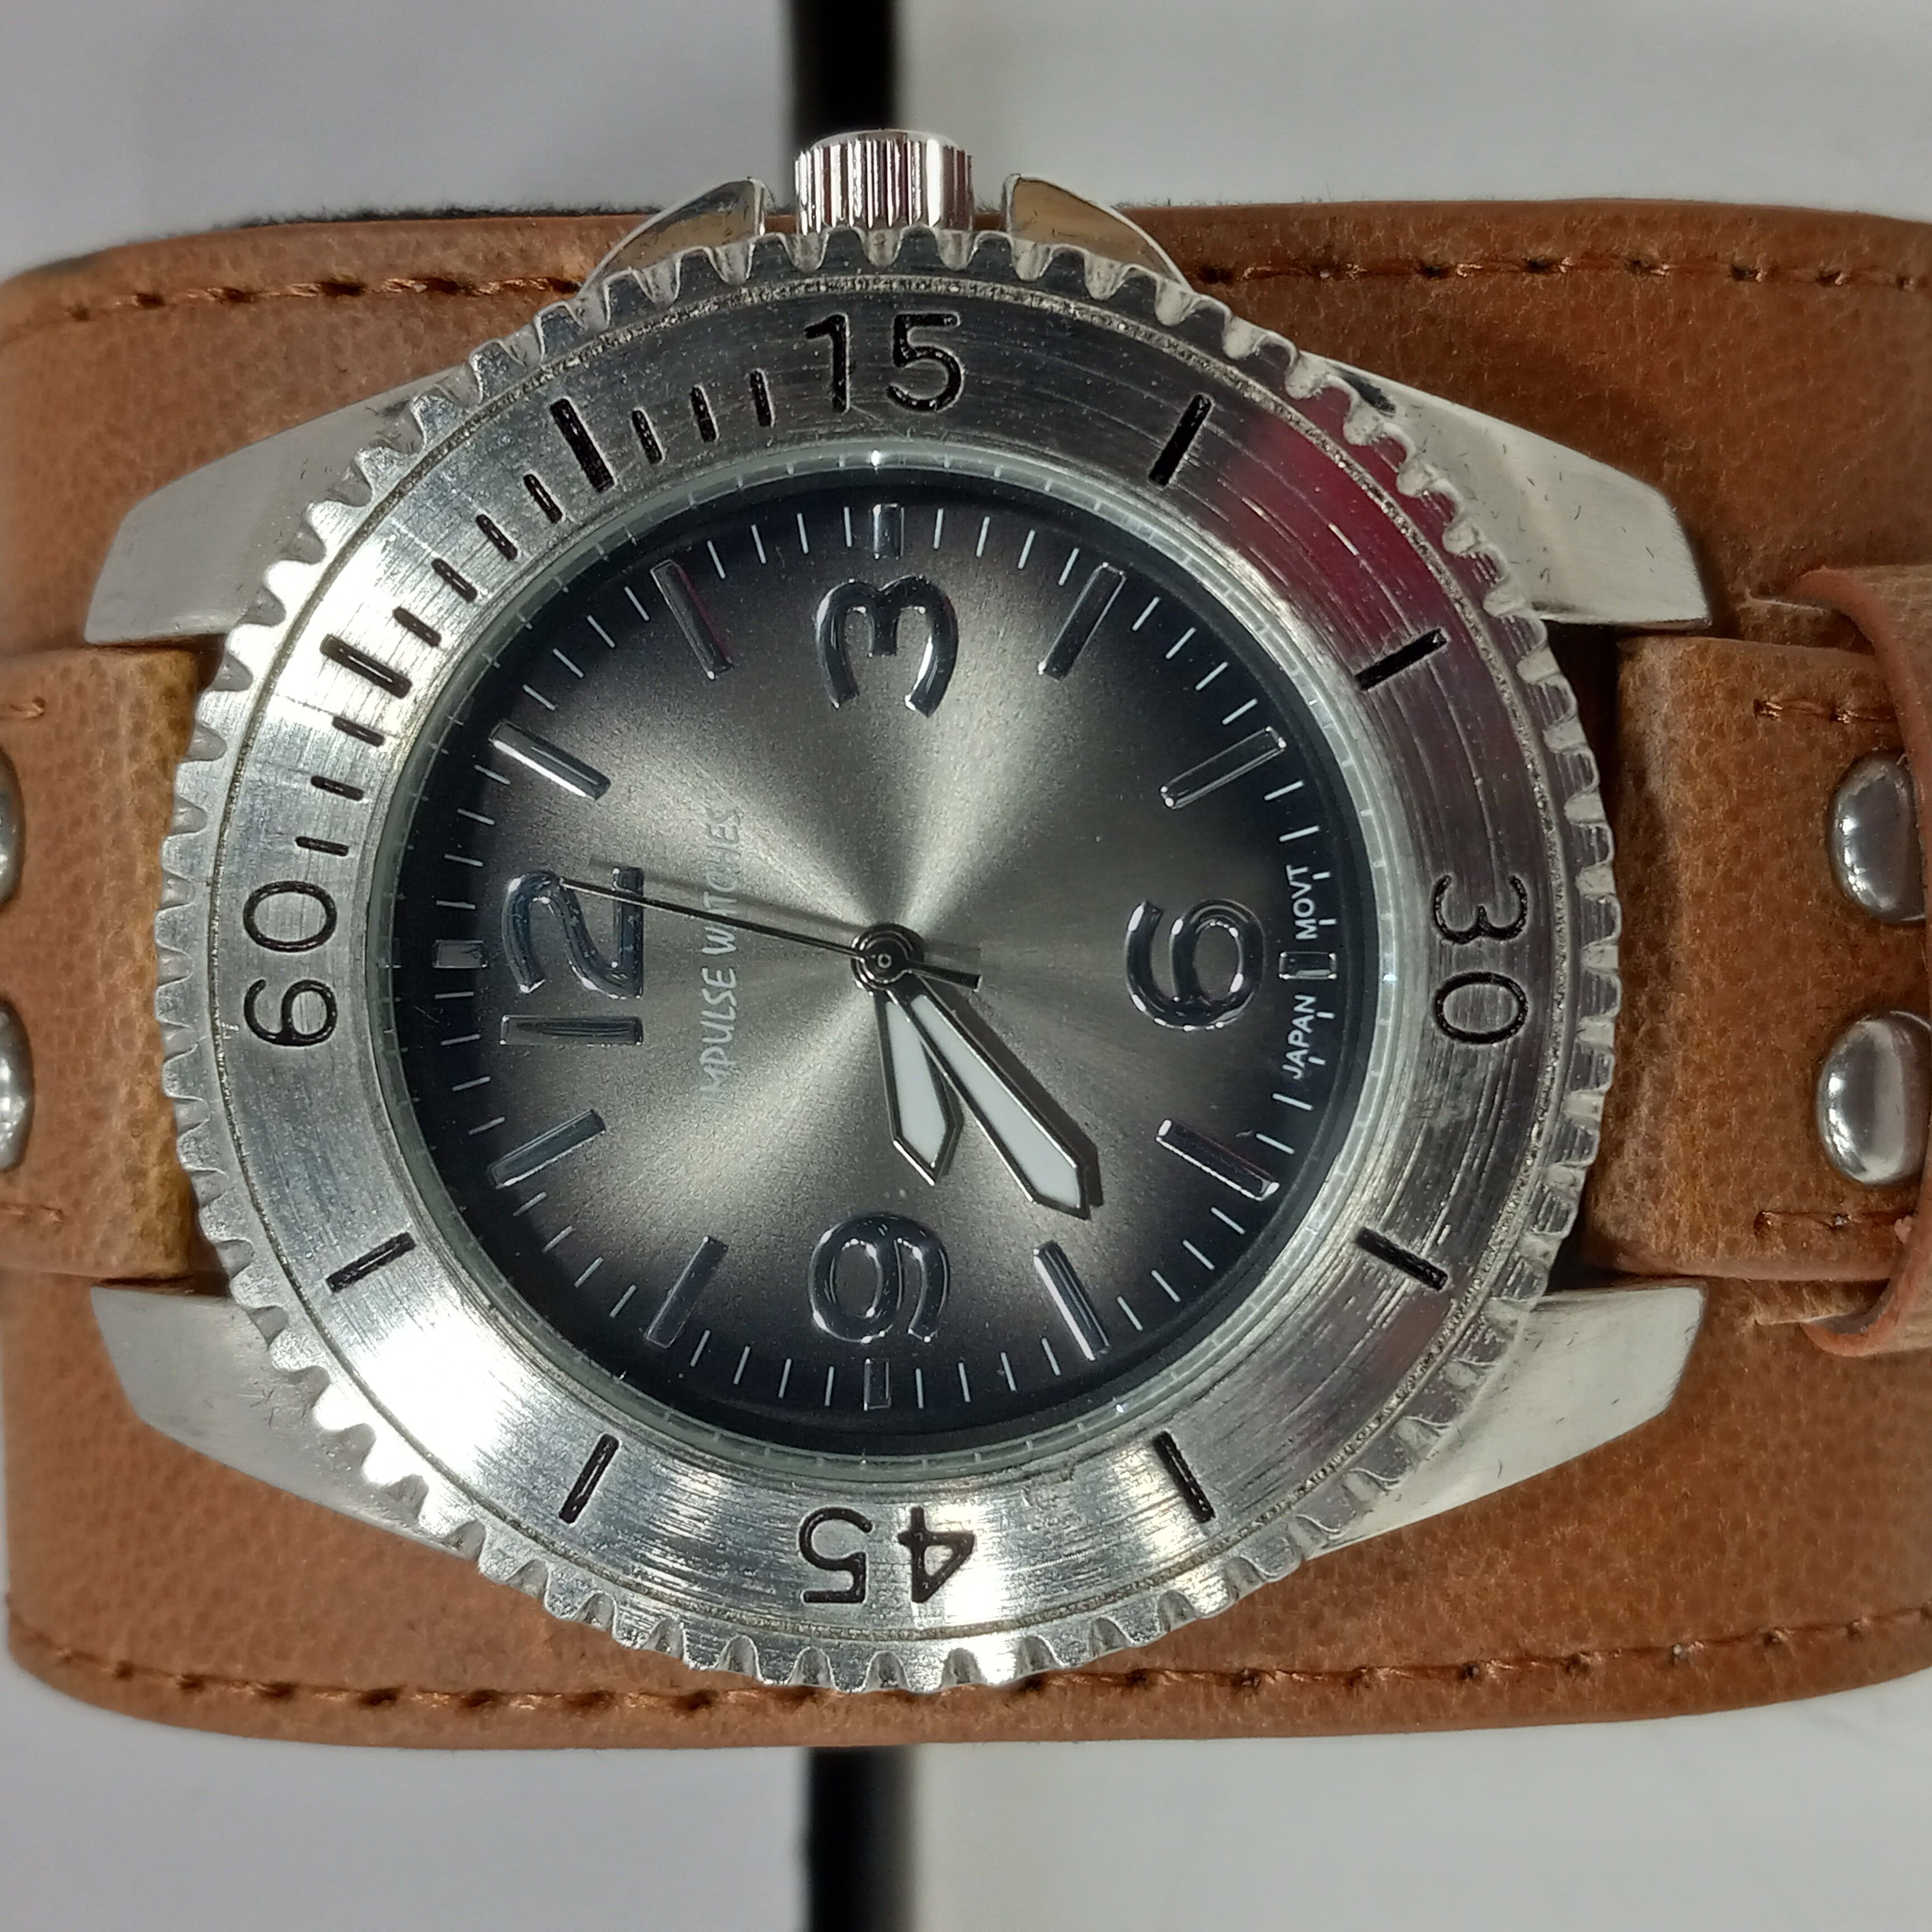 Bernhard Lederer Central Impulse Chronometer Watch Is A Gentleman's Pursuit  Of Precision | aBlogtoWatch